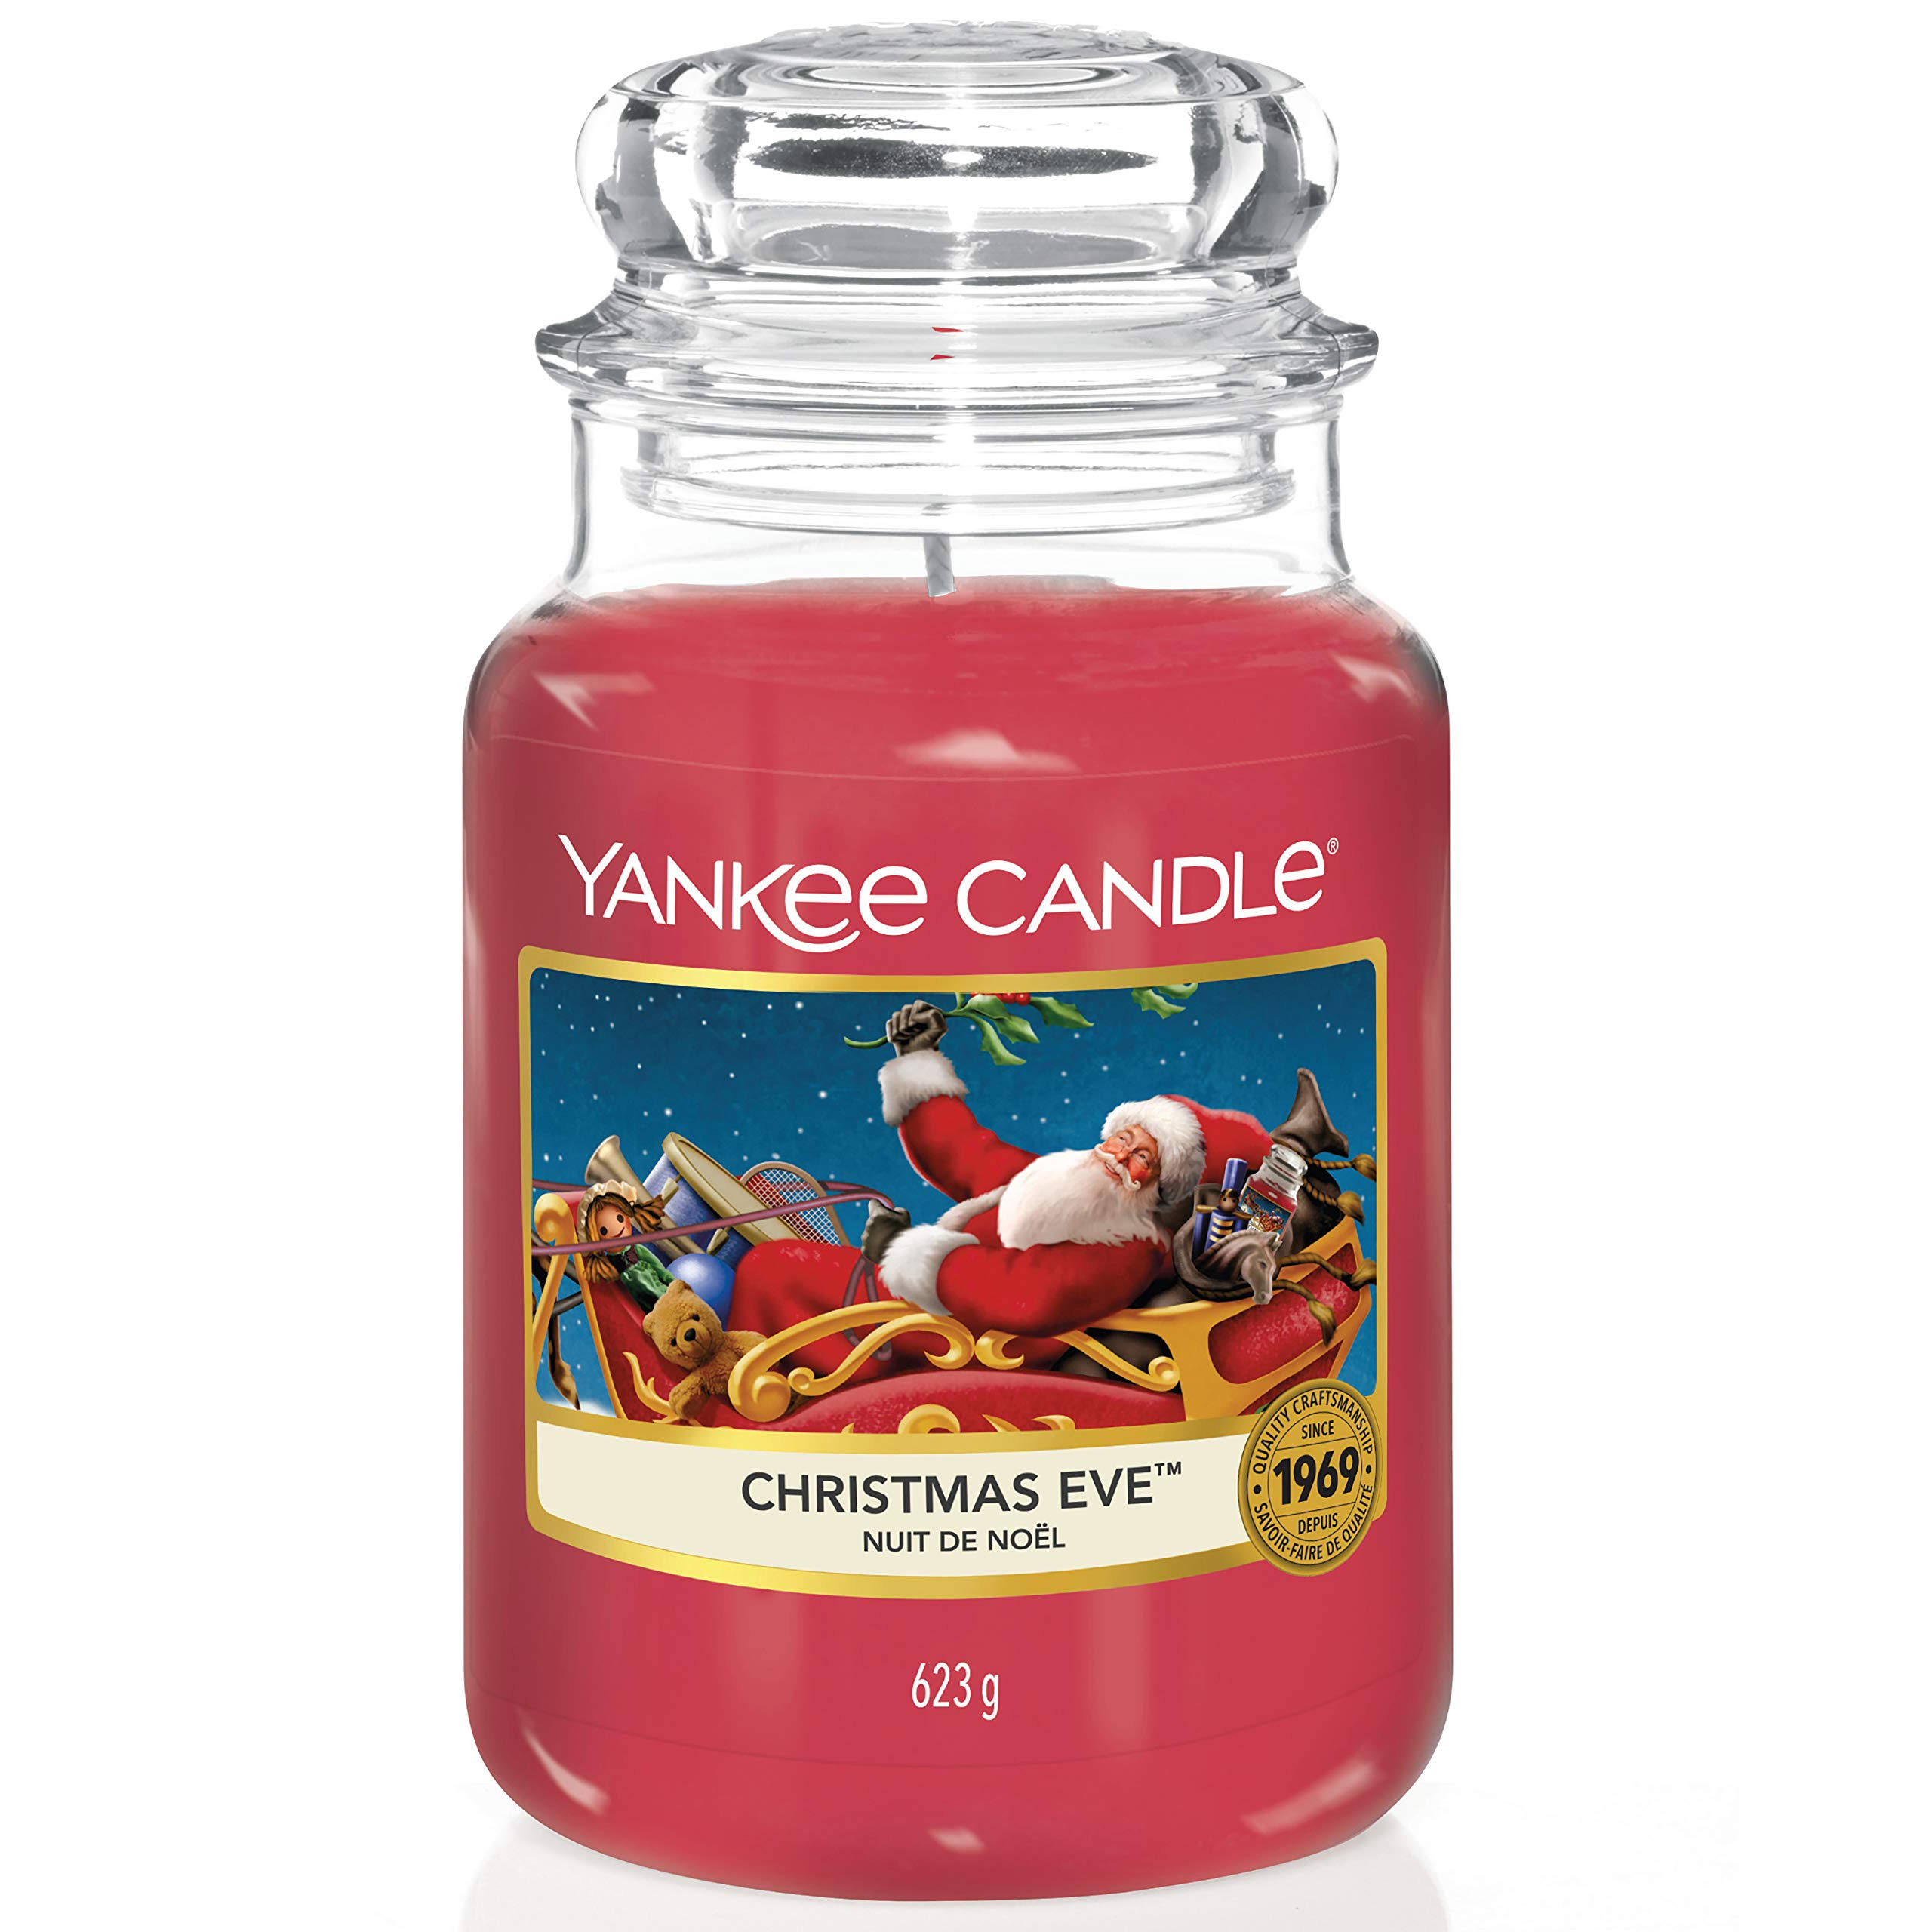 Yankee Candle Large Jar - Christmas Eve